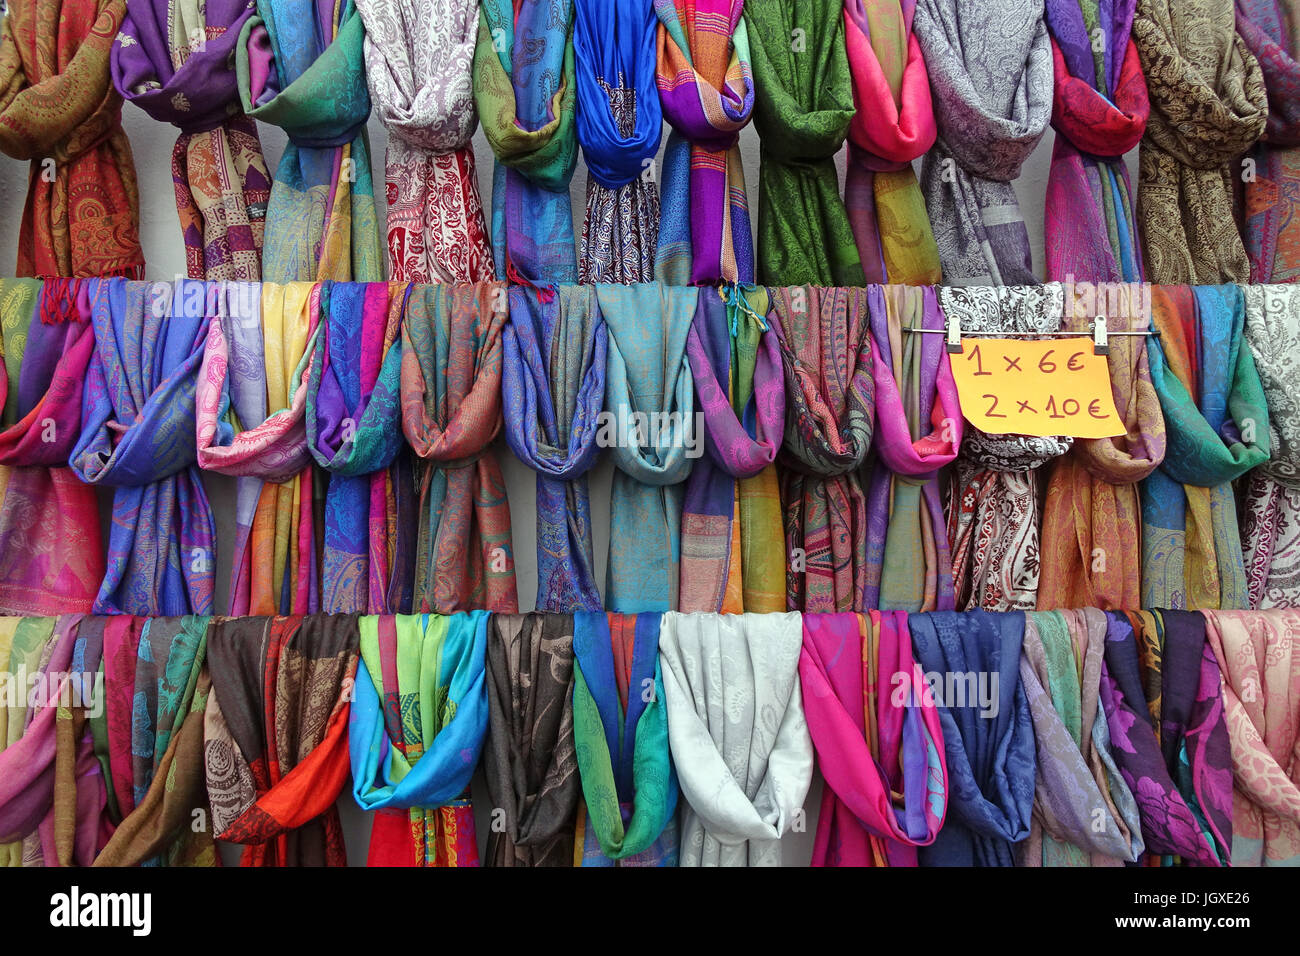 Marktstand mit bunten halstuechern, woechentlicher sonntagsmarkt in Teguise, Lanzarote, isole kanarische, europa | Mercato in stallo con colorate sciarpe Foto Stock